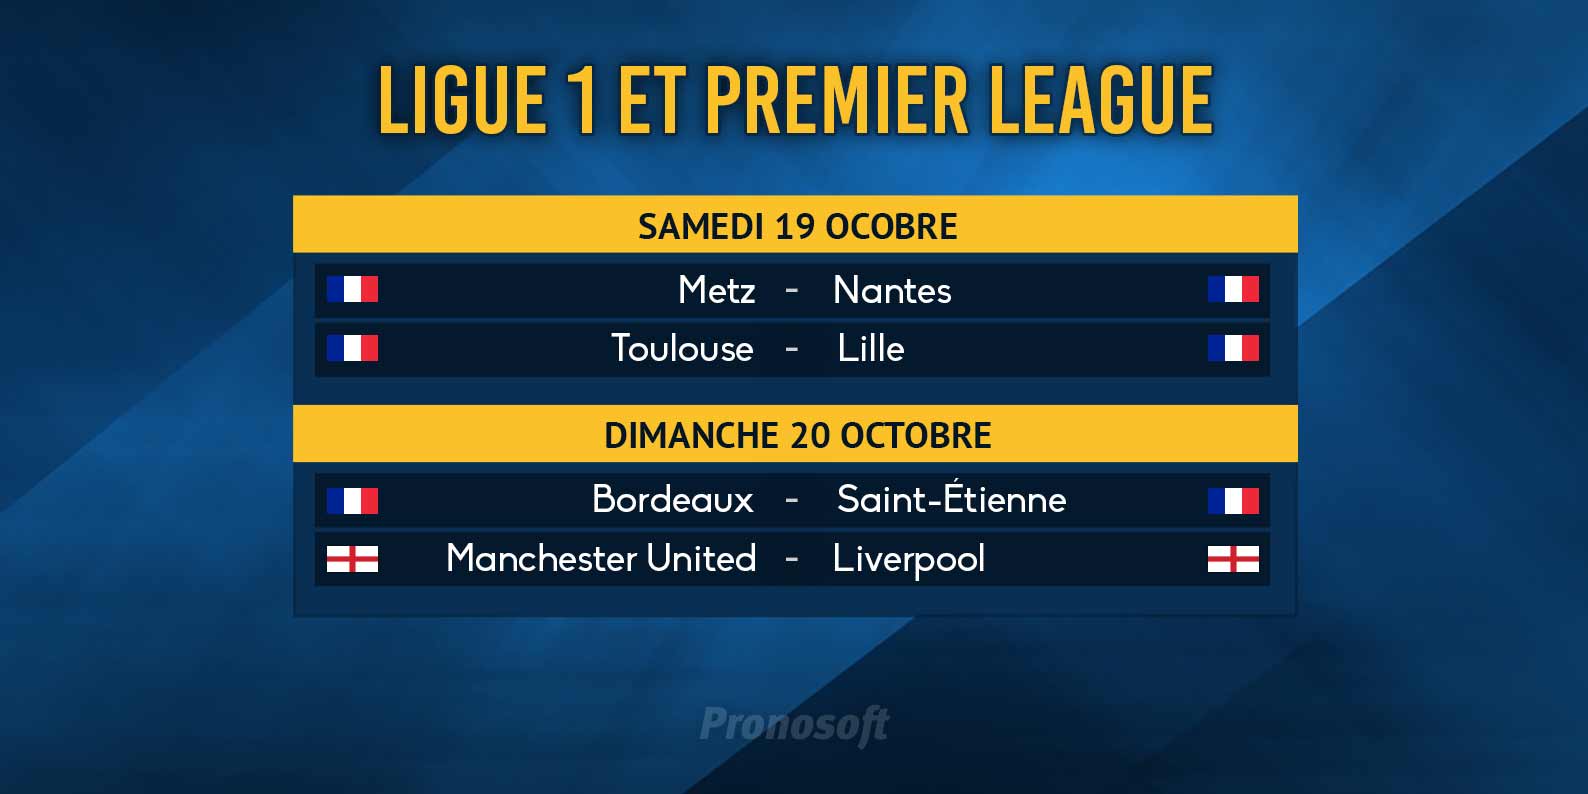 En Ligue 1, les duels semblent serrs jusqu'au bout ce week-end.